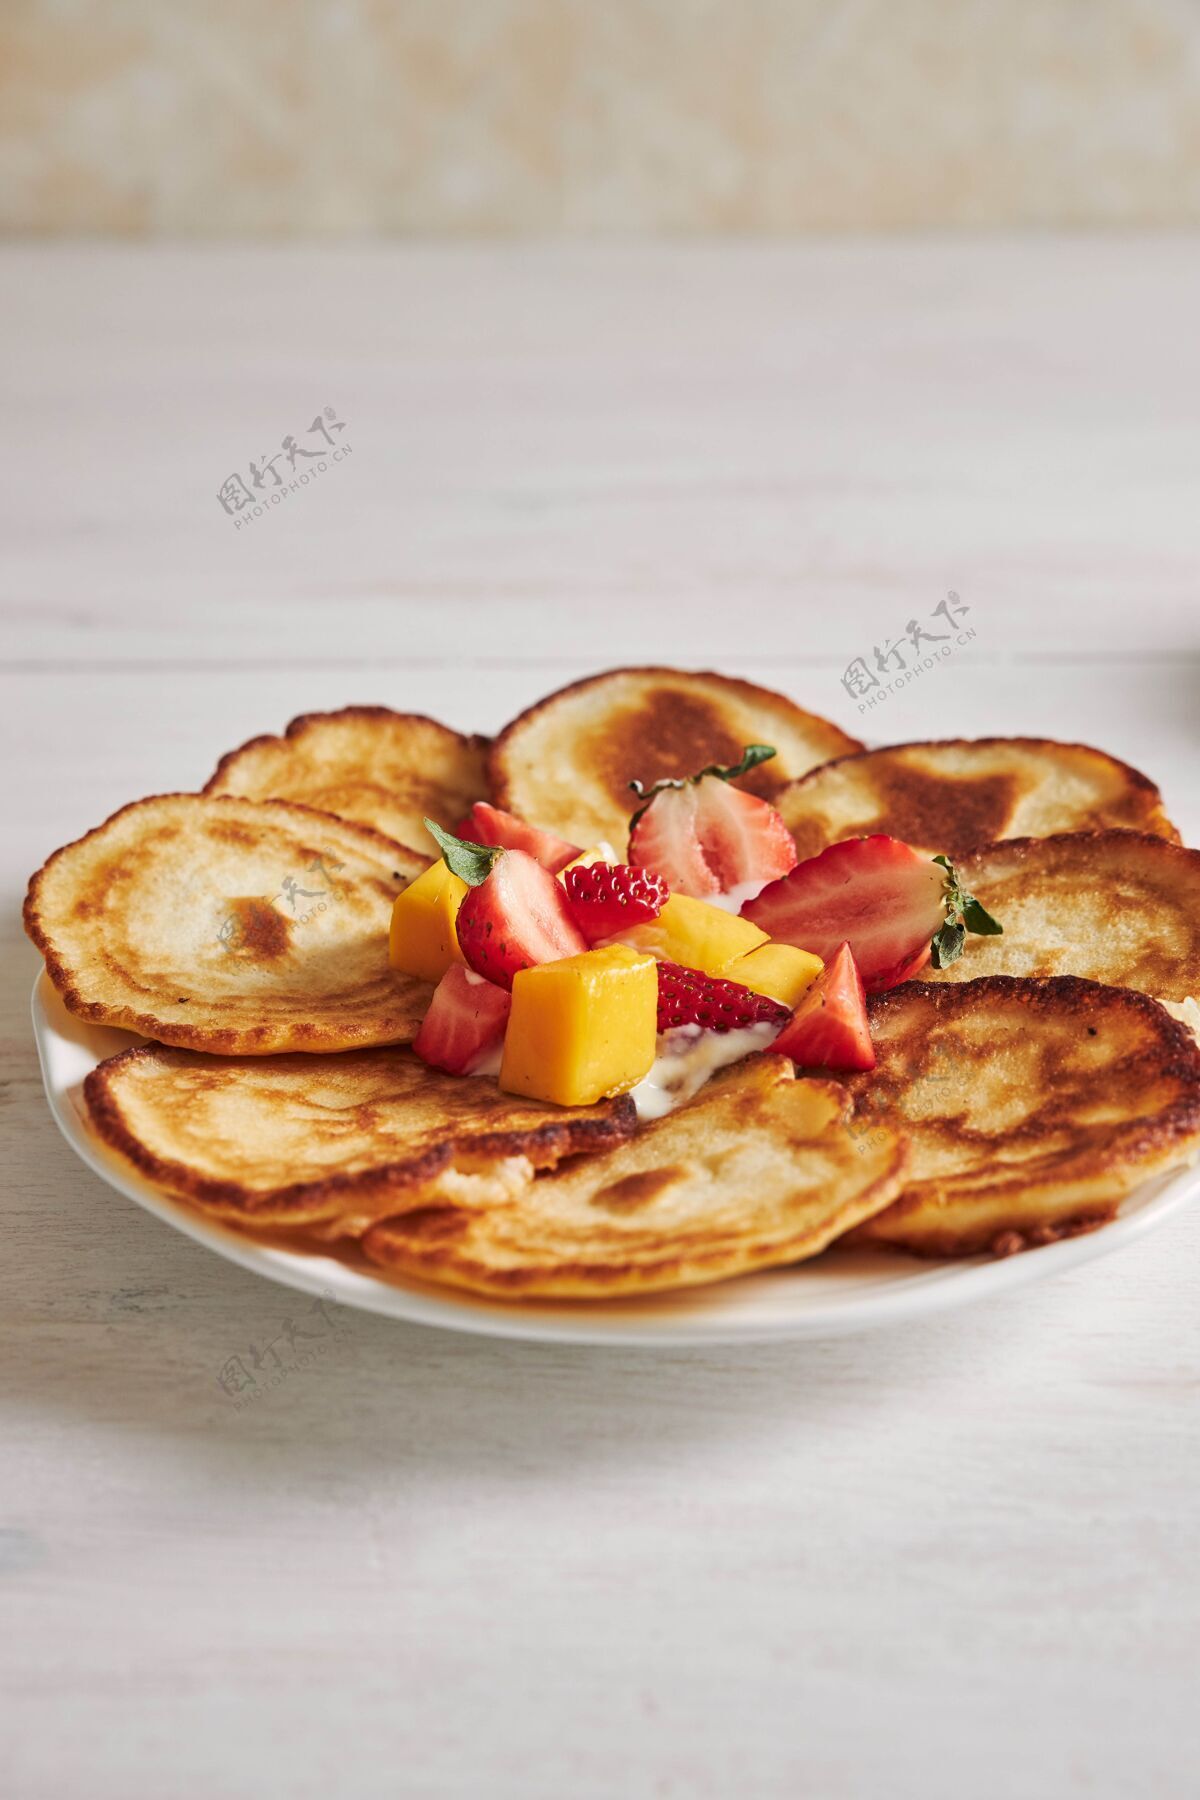 自制白木桌上美味的水果煎饼的垂直镜头餐美味盘子